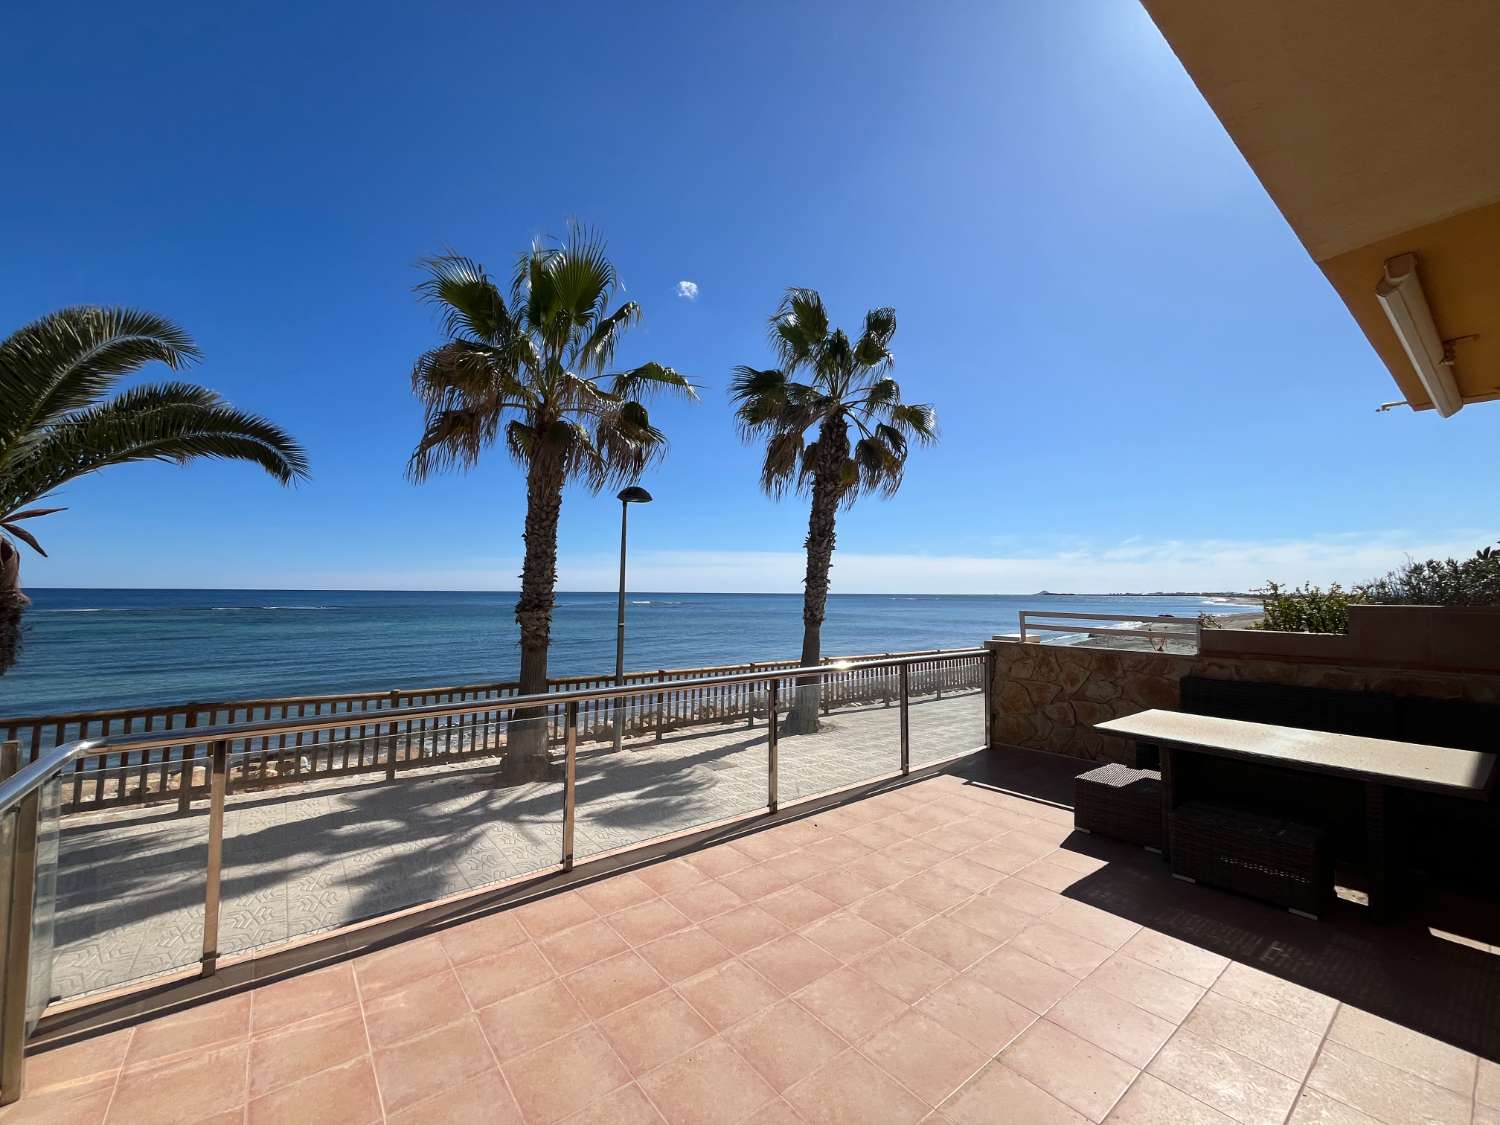 Luxury villa located on the beachfront